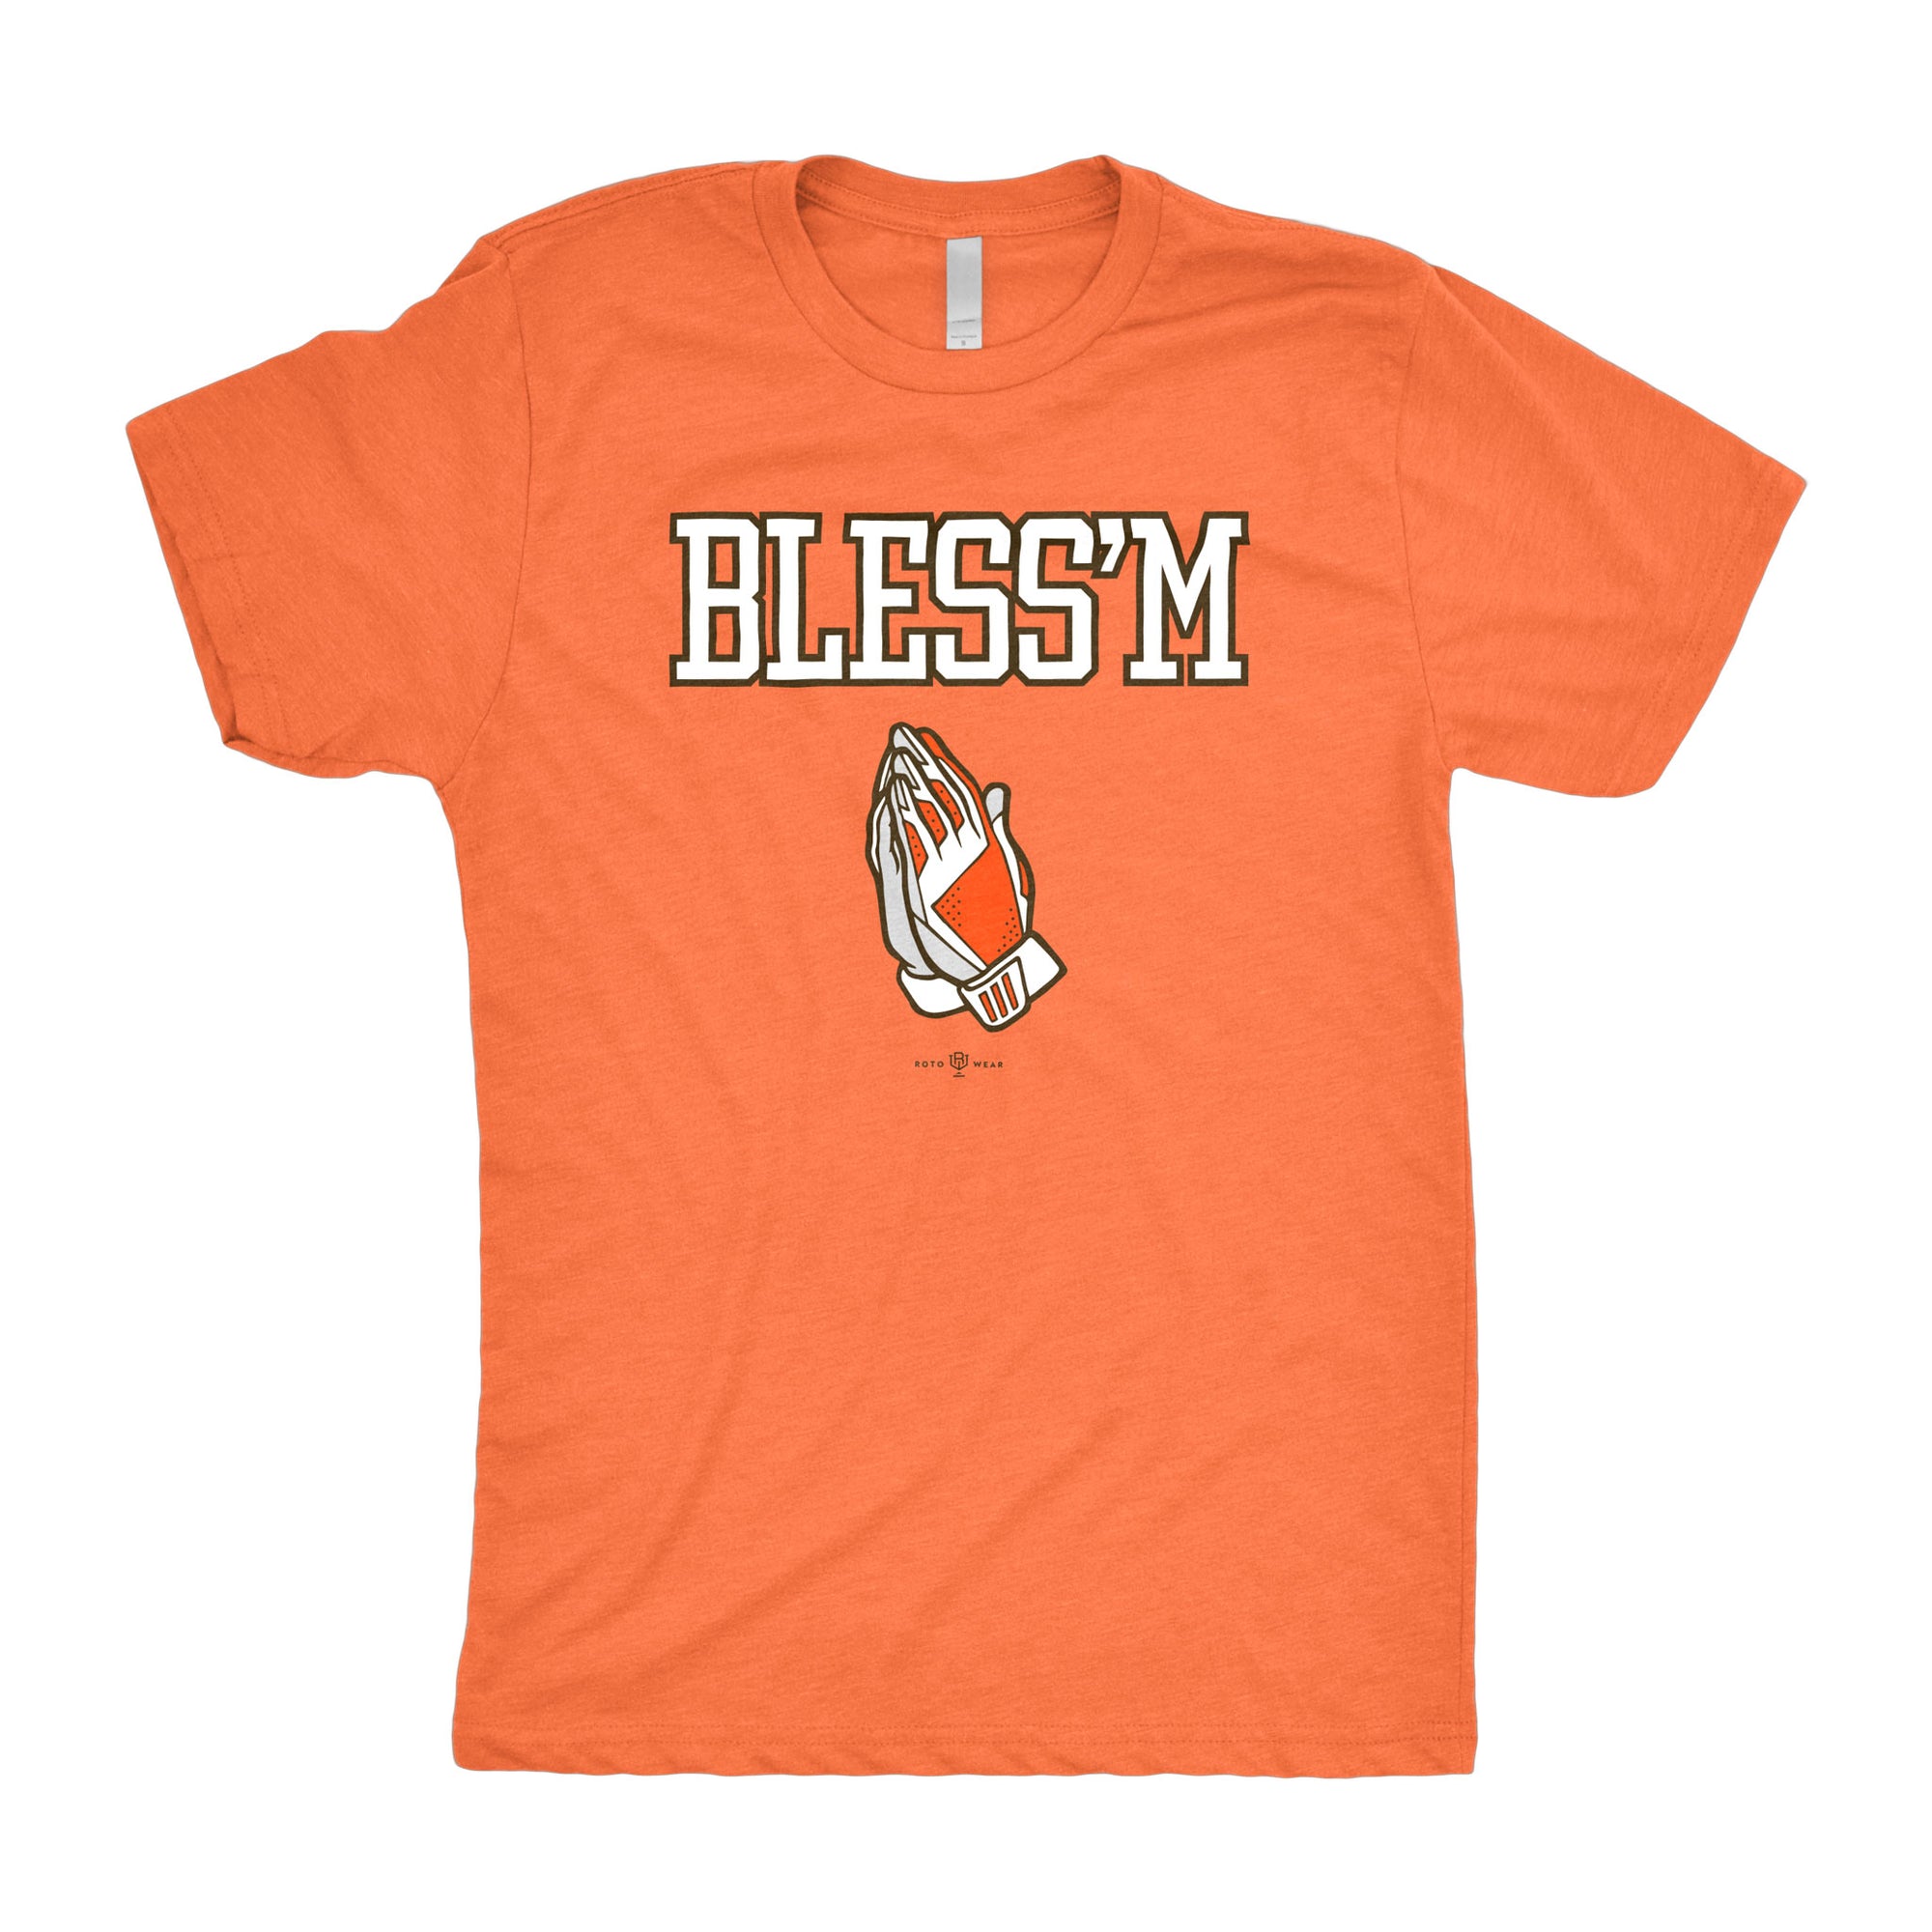 Bless'm T-Shirt